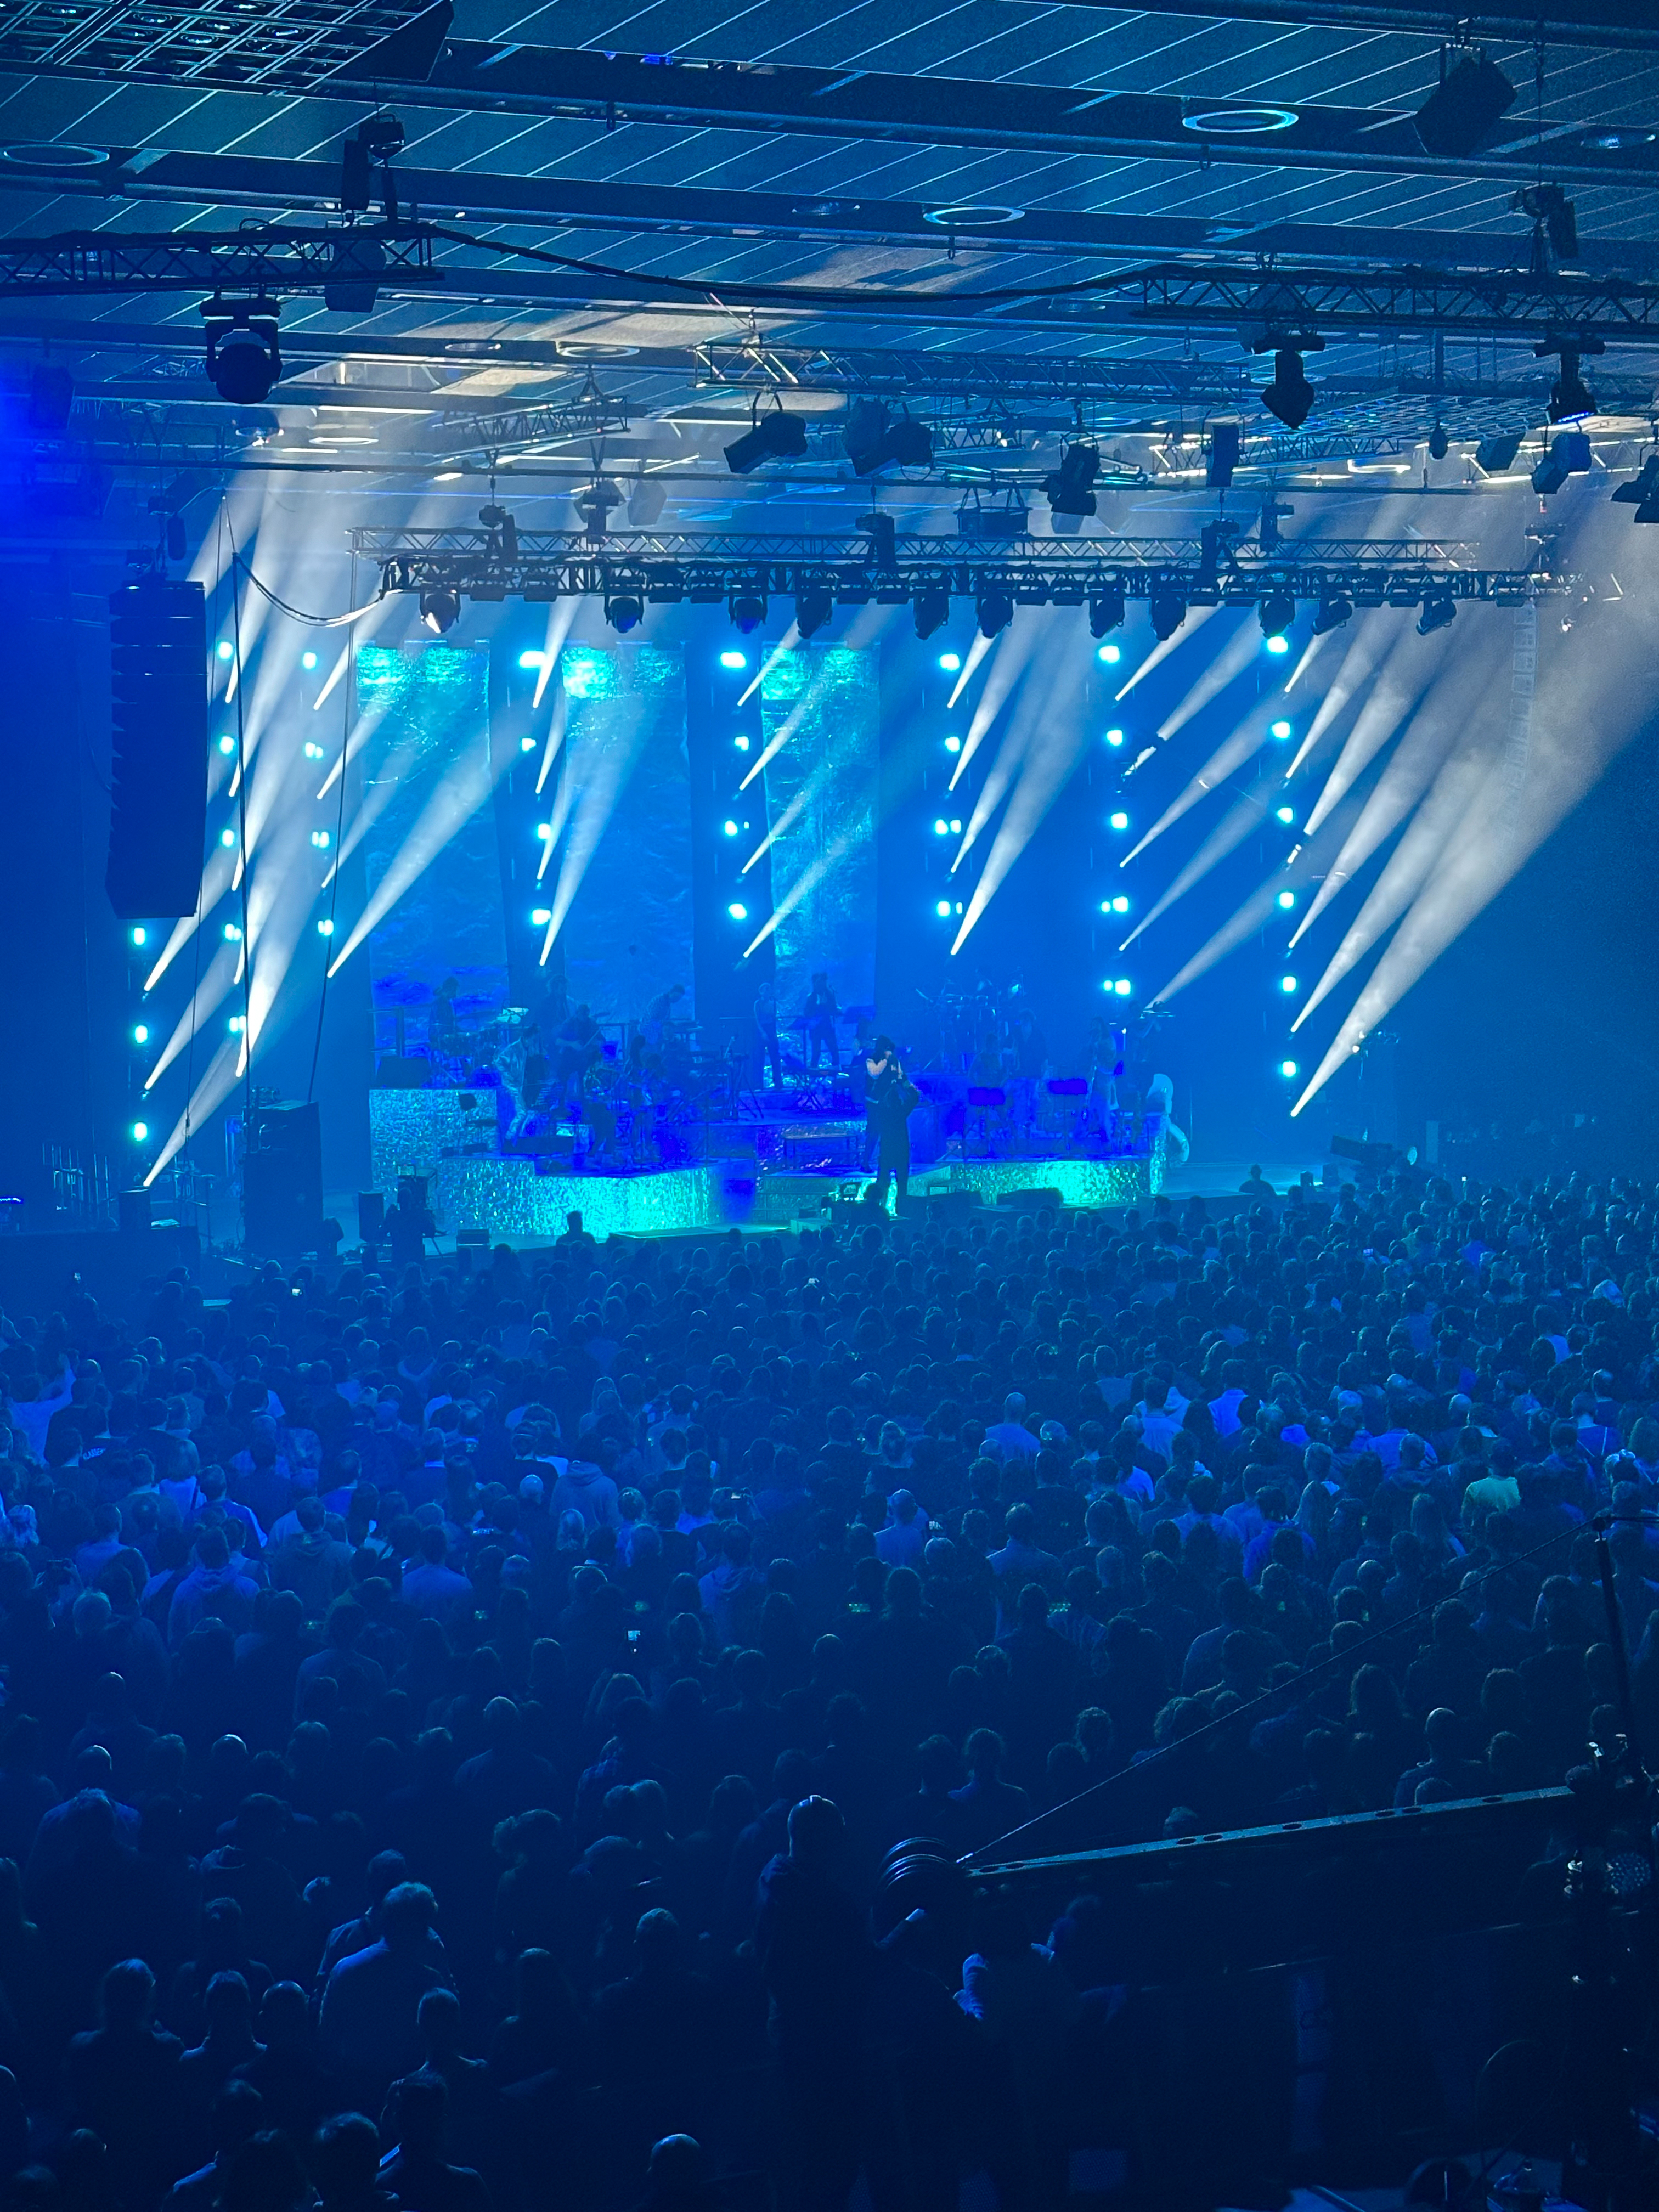 Showveranstaltung im RuhrCongress Bochum. Menschen tanzen vor der Bühne, der Saal ist blau beleuchtet.